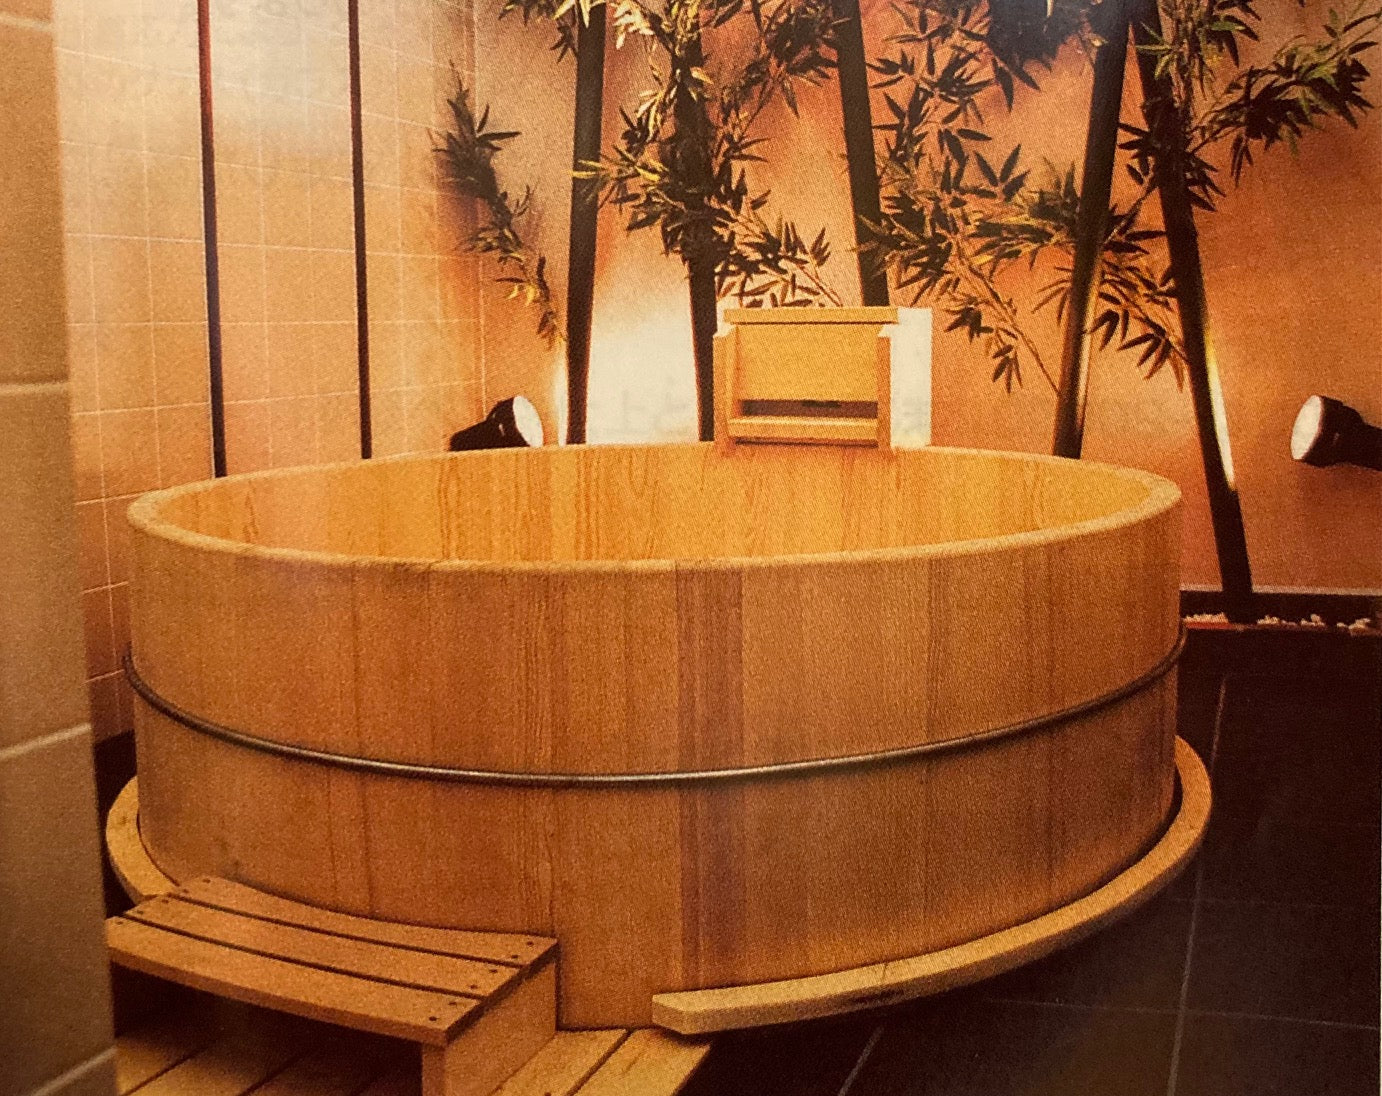 Made-to-Order Fujii Seihisho Bath Tub